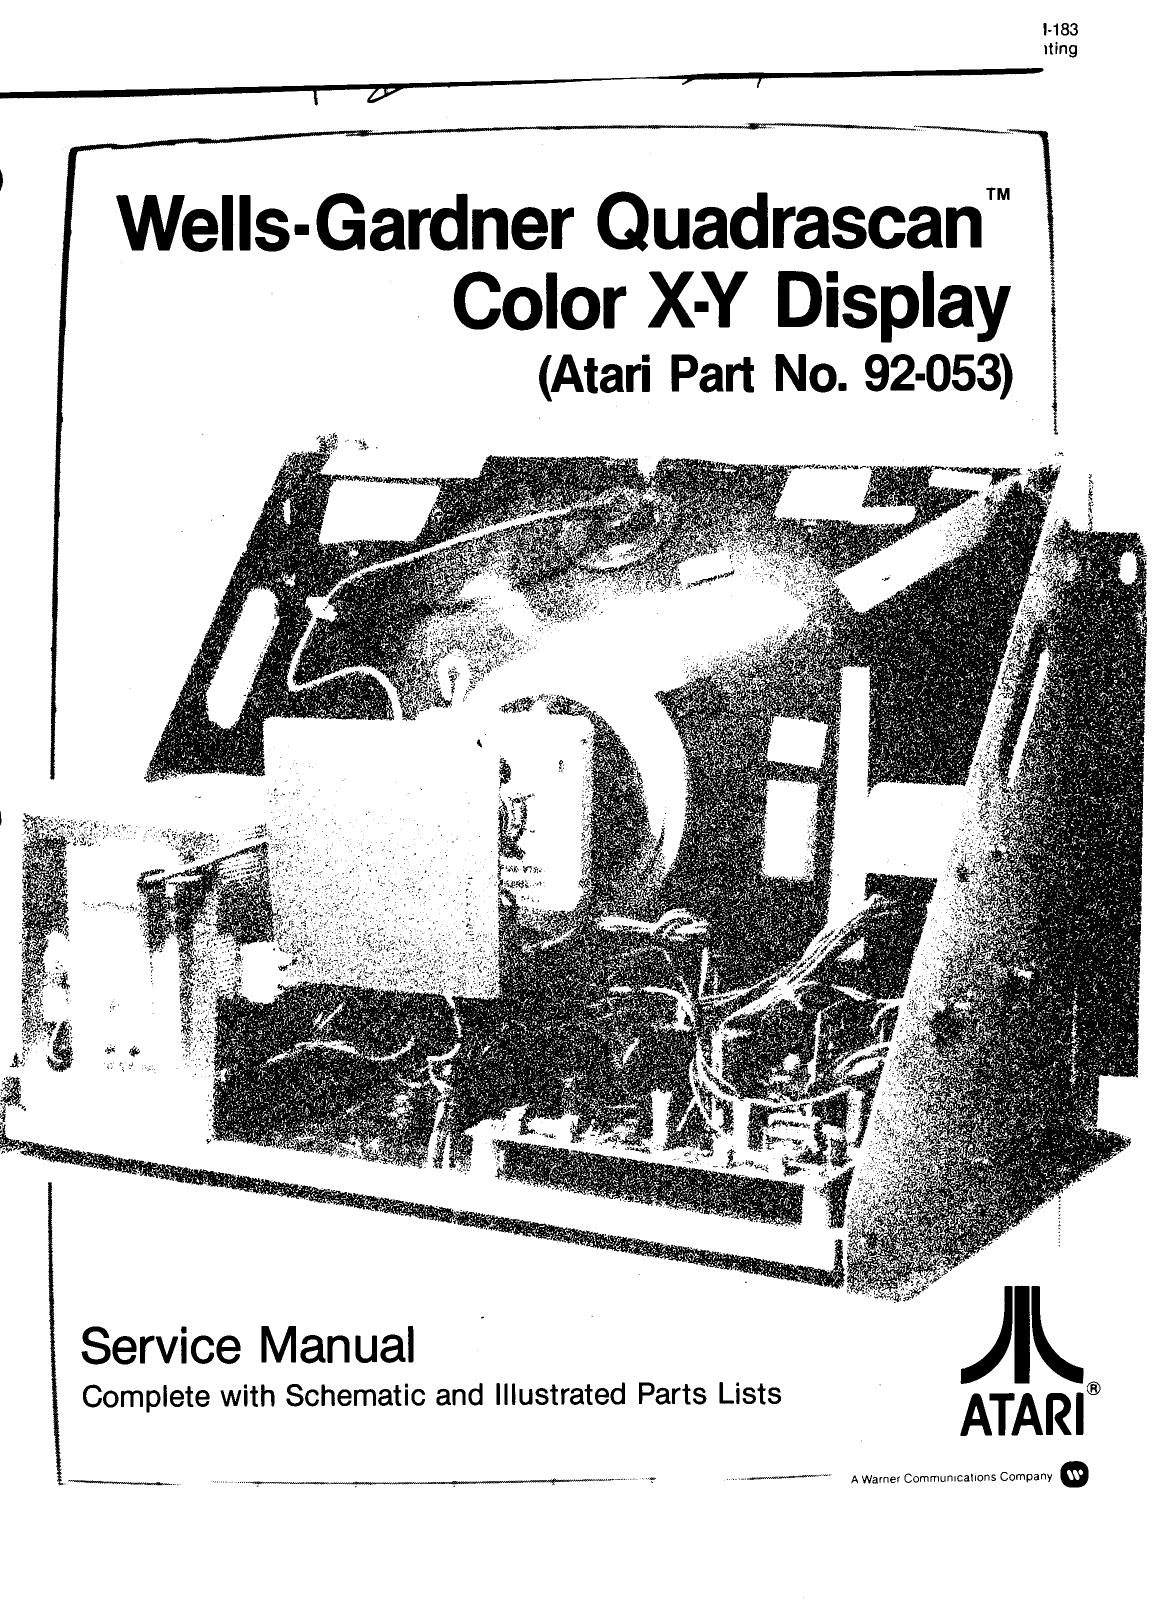 Wells-Gardner 6100 XY Quadrascan (TM-183 xxx Printing)(Tempest) (Serv-Schem-Part) (U)